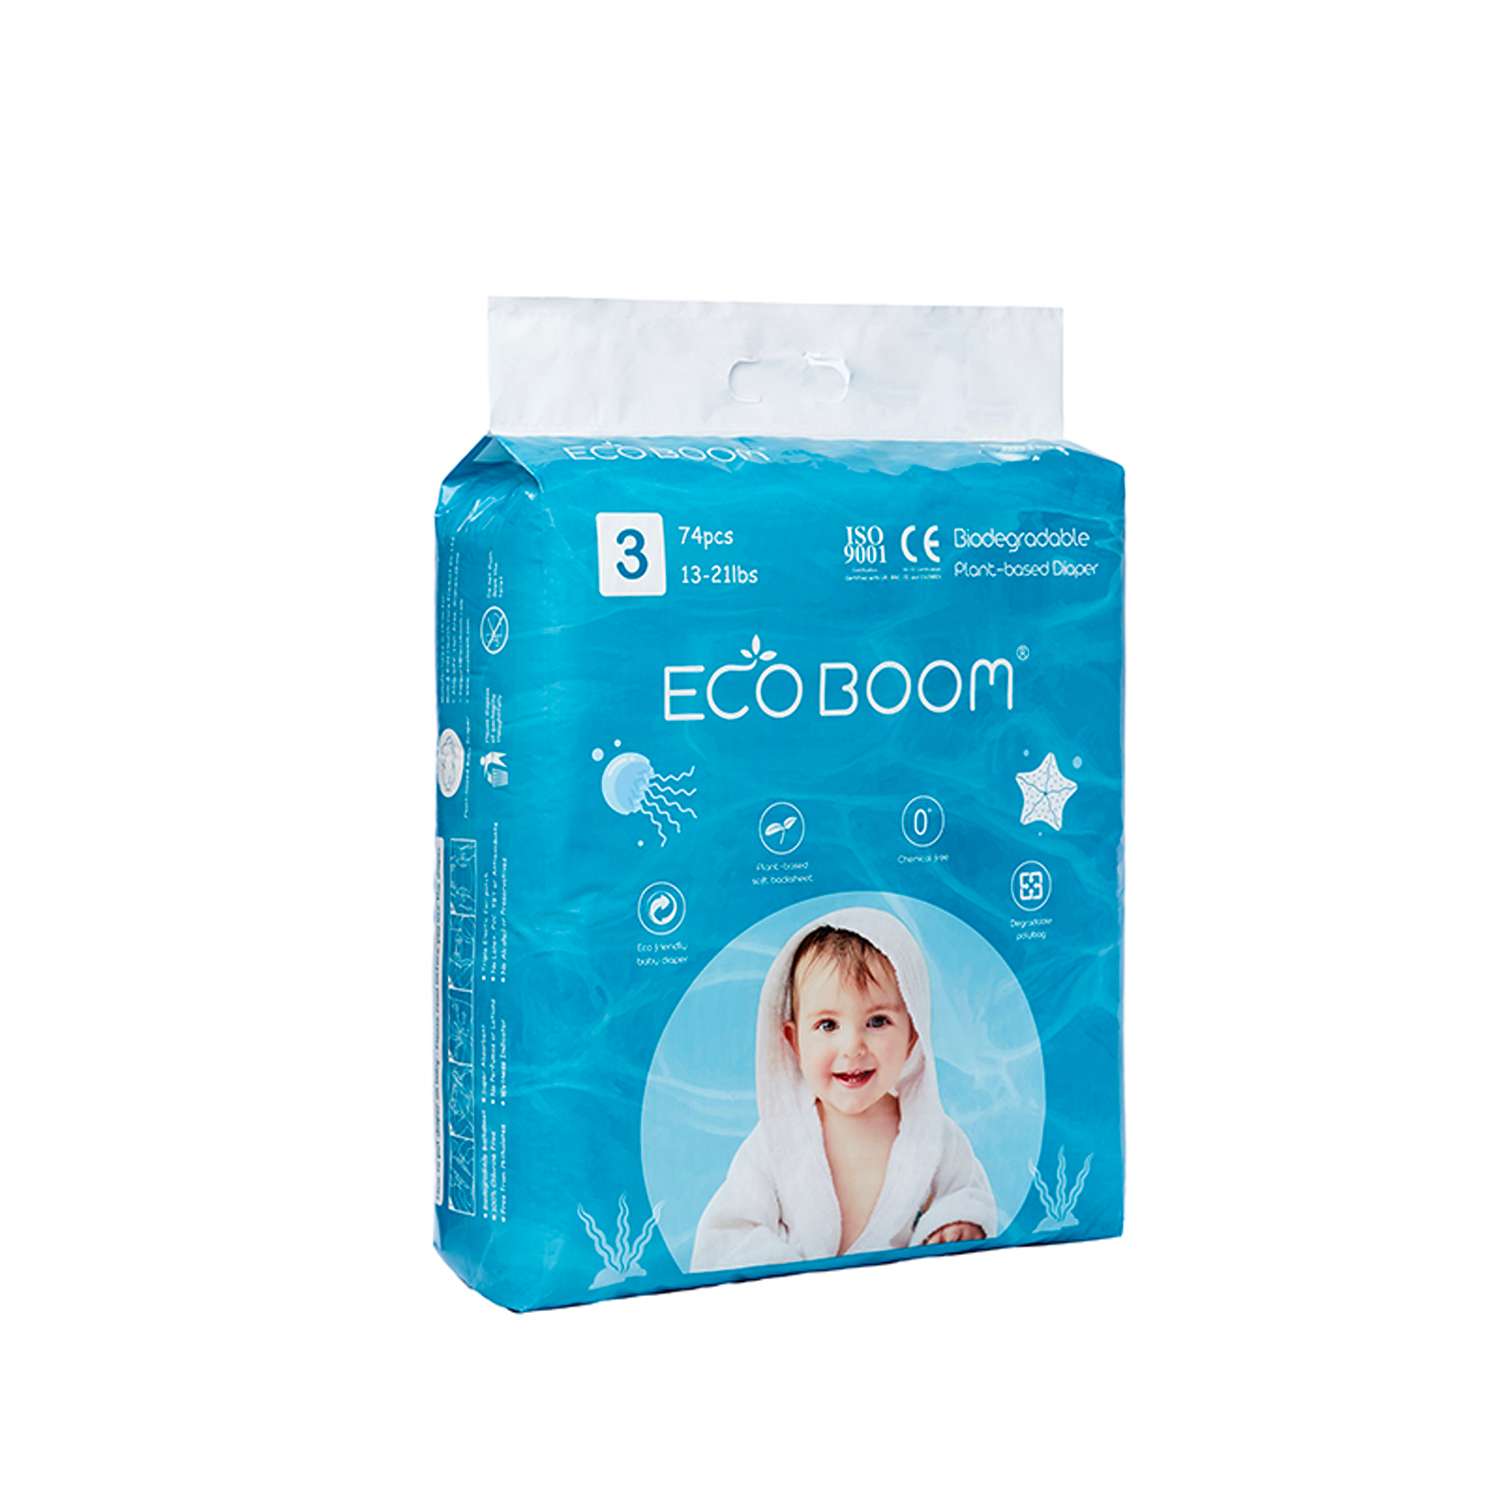 Эко подгузники детские ECO BOOM размер 3/M для детей весом 6-10 кг 74 шт - фото 2